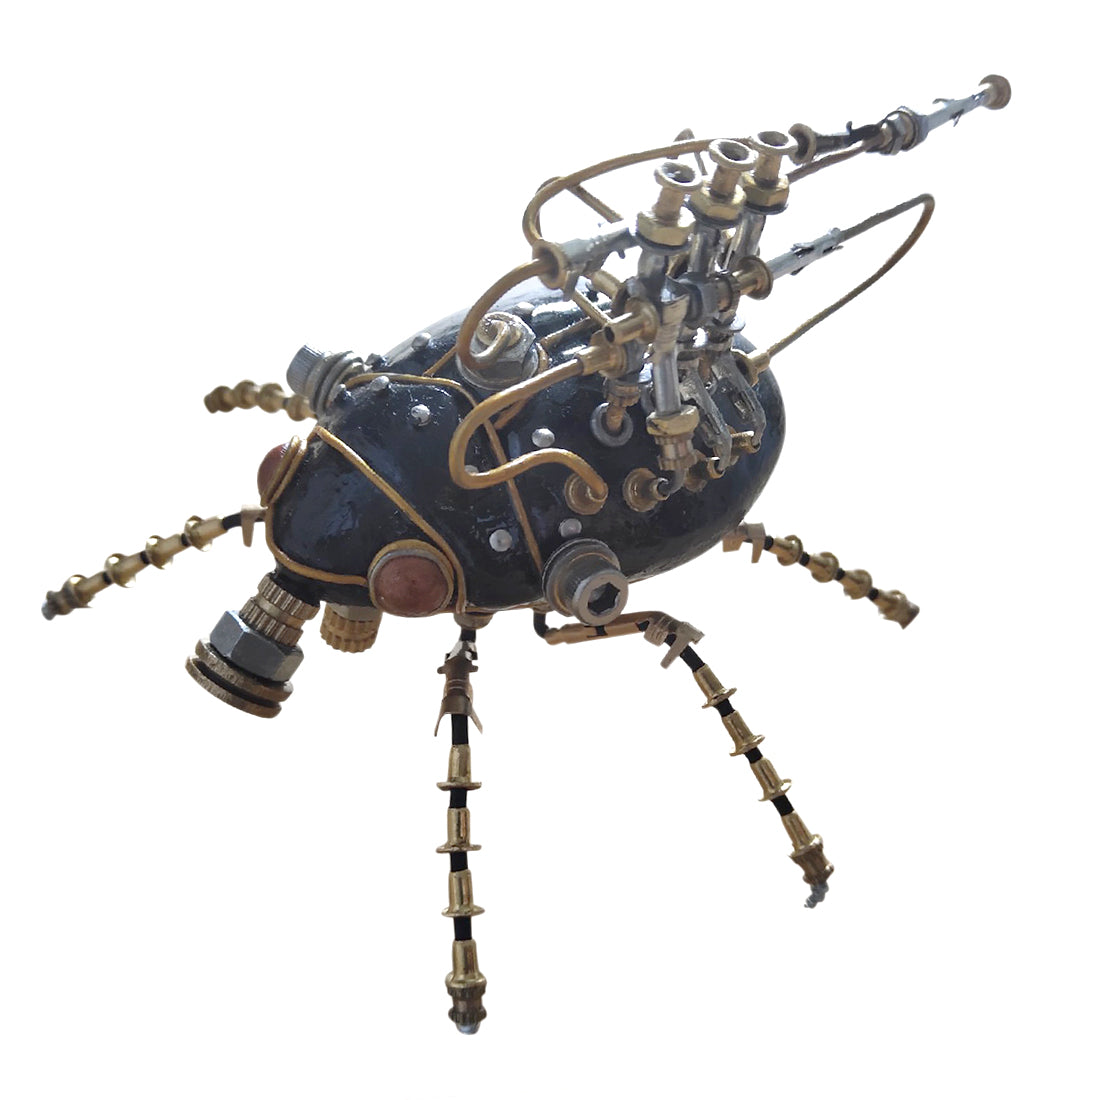 3D Metal Little Beetle Model Handmade Steampunk Crafts Sculpture